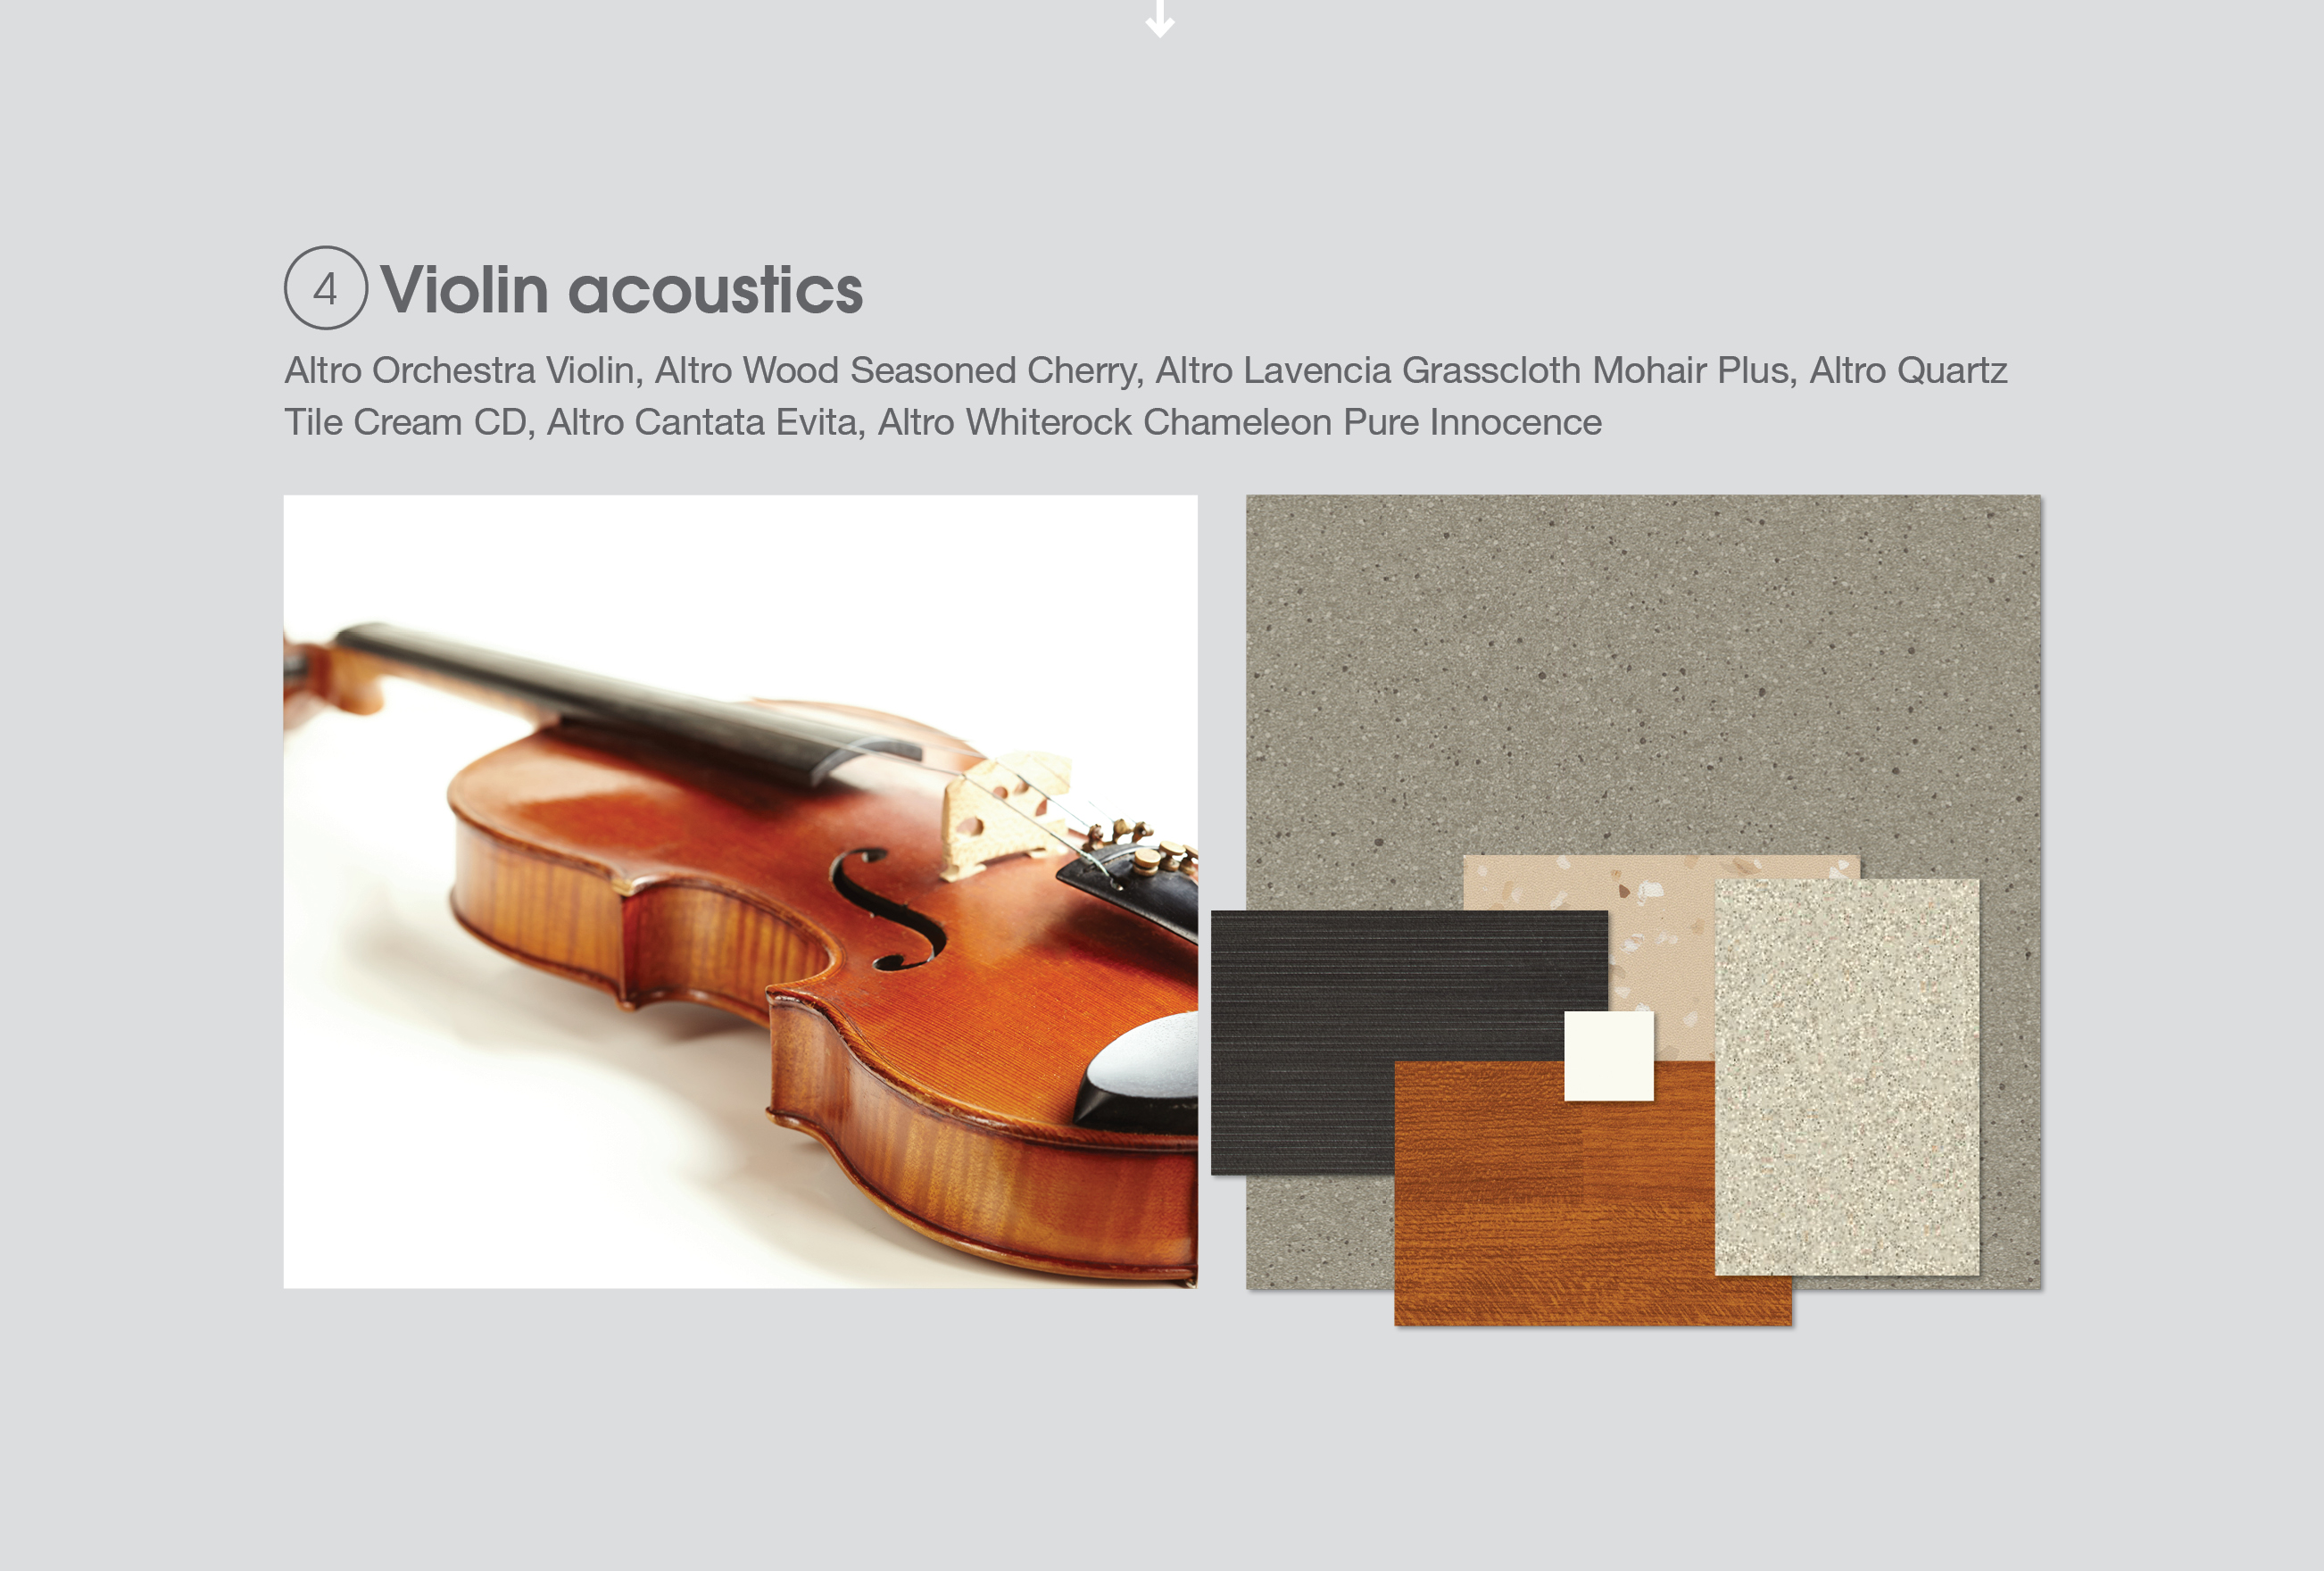 Violin acoustics